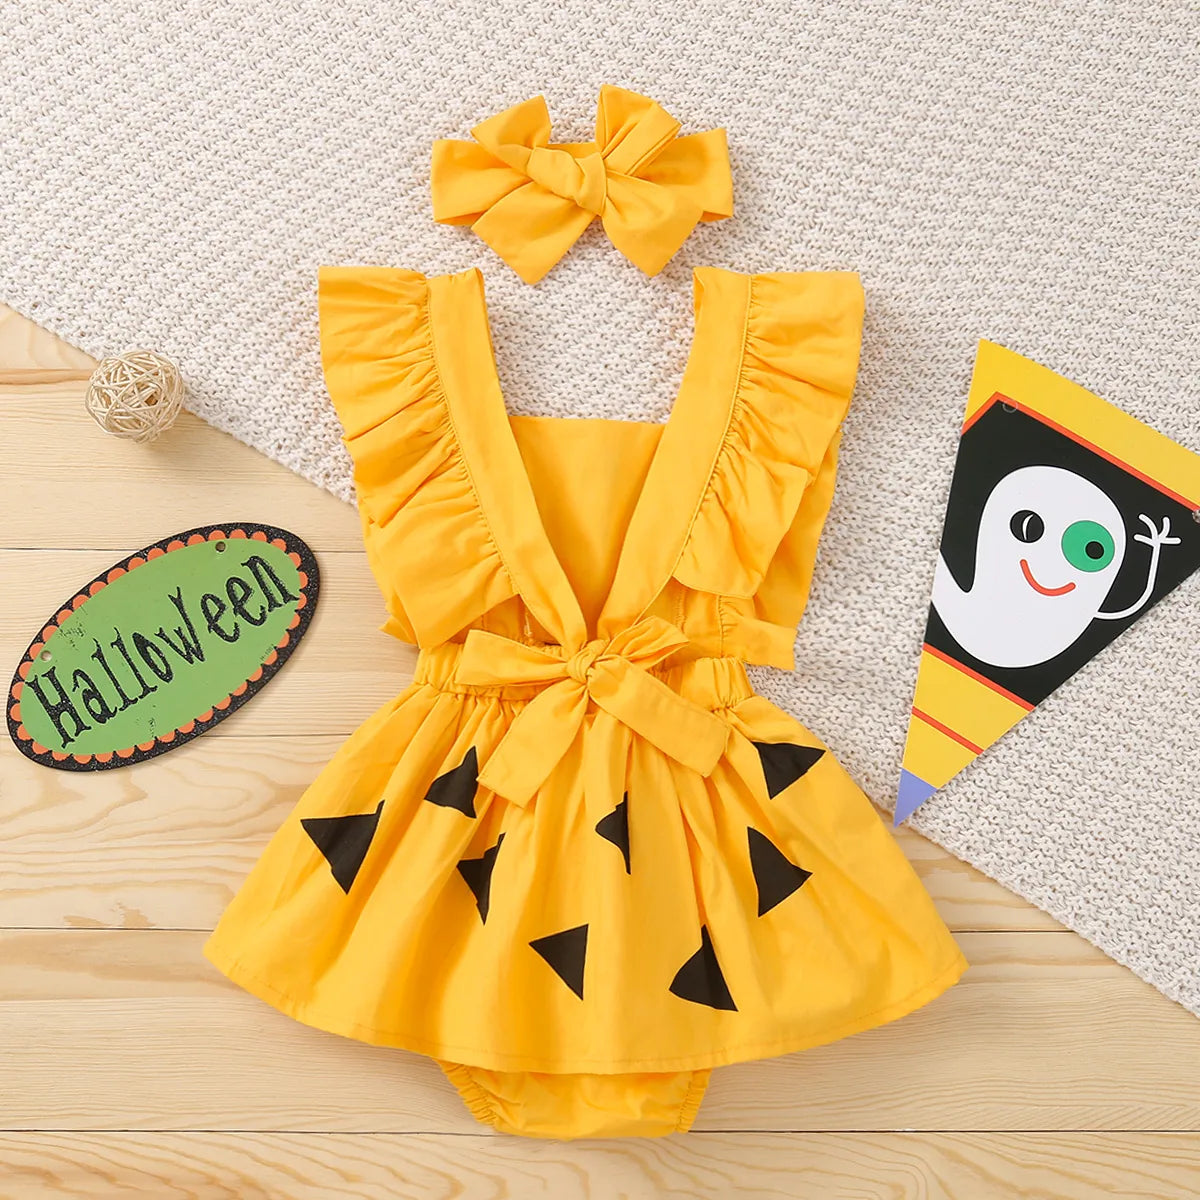 The Flintstones Halloween Costumes for baby girl